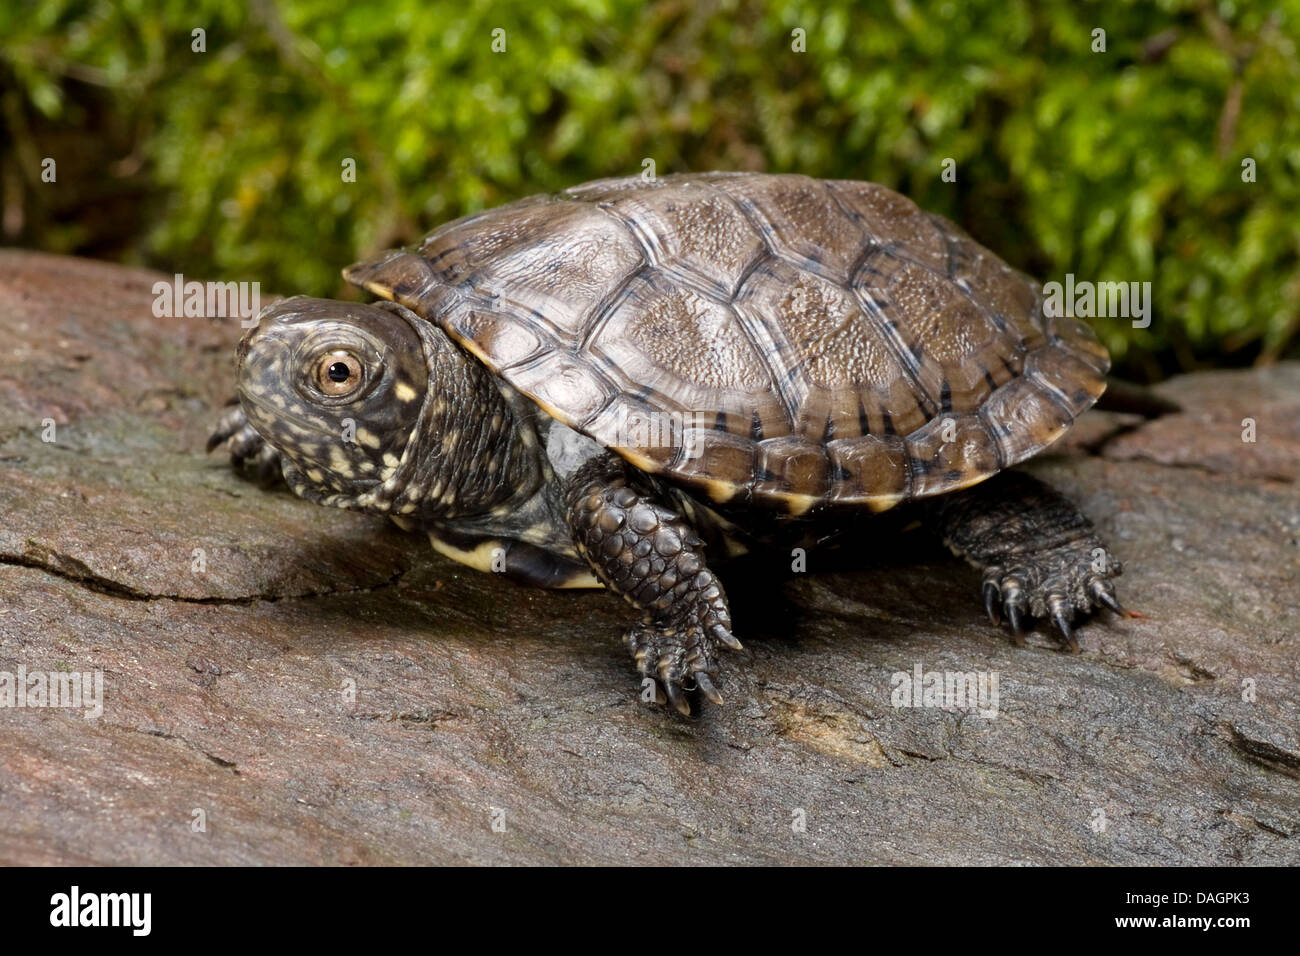 European pond terrapin, European pond turtle, European pond tortoise (Emys orbicularis), on a stone Stock Photo